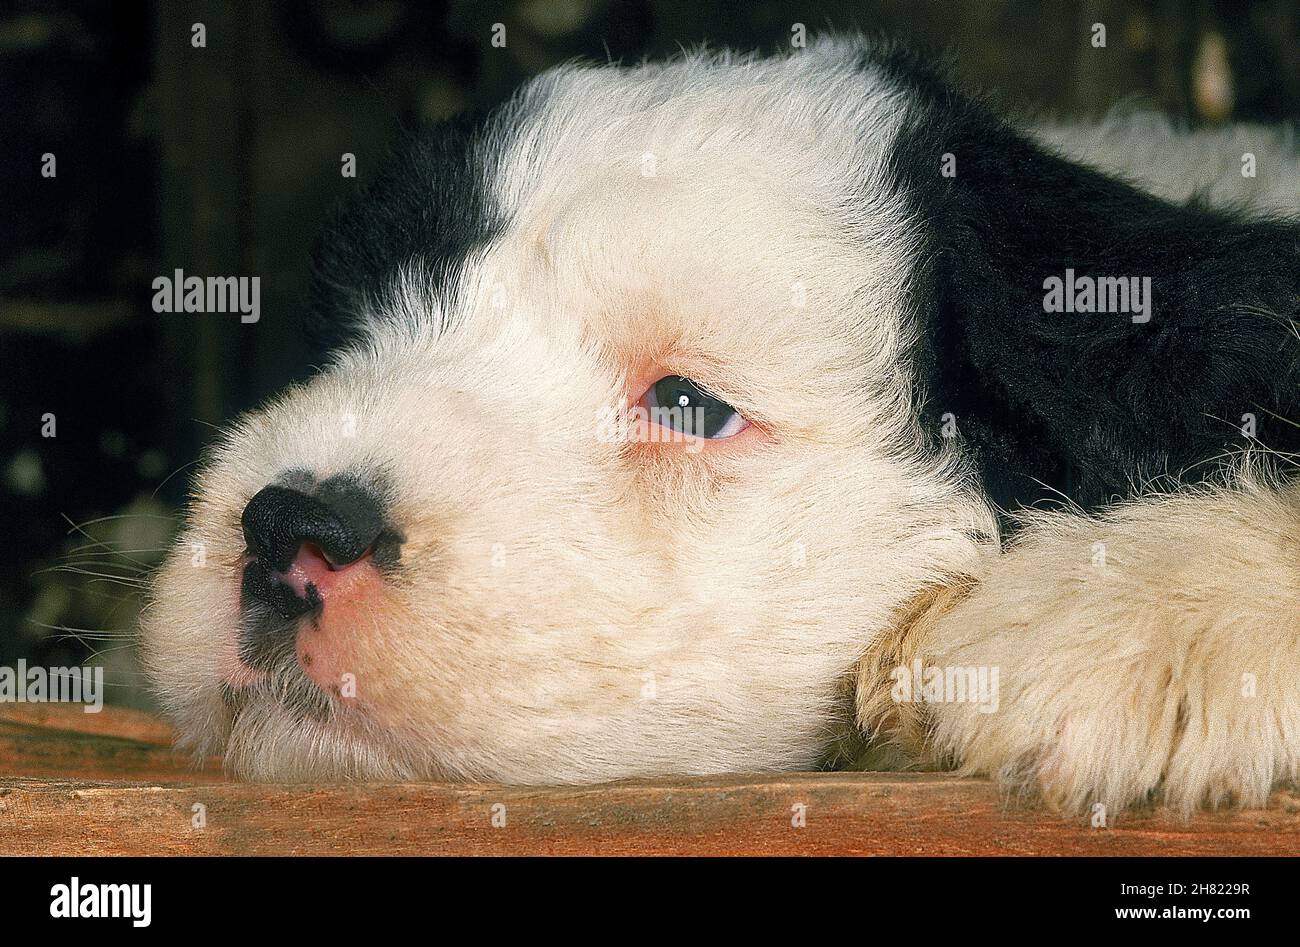 Sheepdog Inglês Velho Recém-nascido Foto de Stock - Imagem de